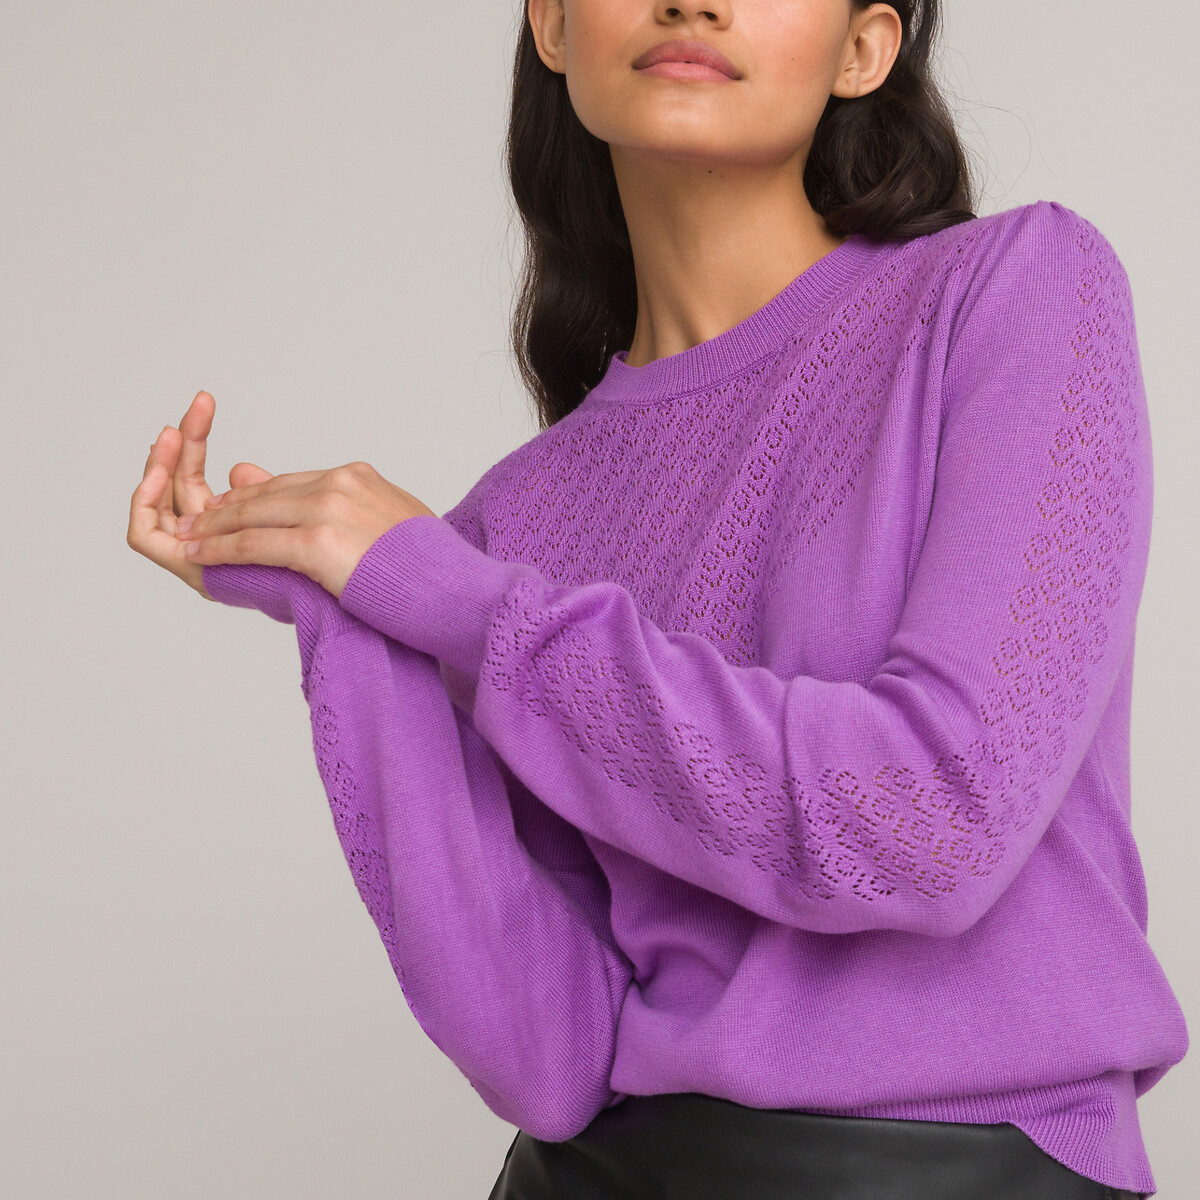 Пуловер с круглым вырезом из трикотажа пуантель S фиолетовый пуловер с круглым вырезом из трикотажа пуантель s фиолетовый